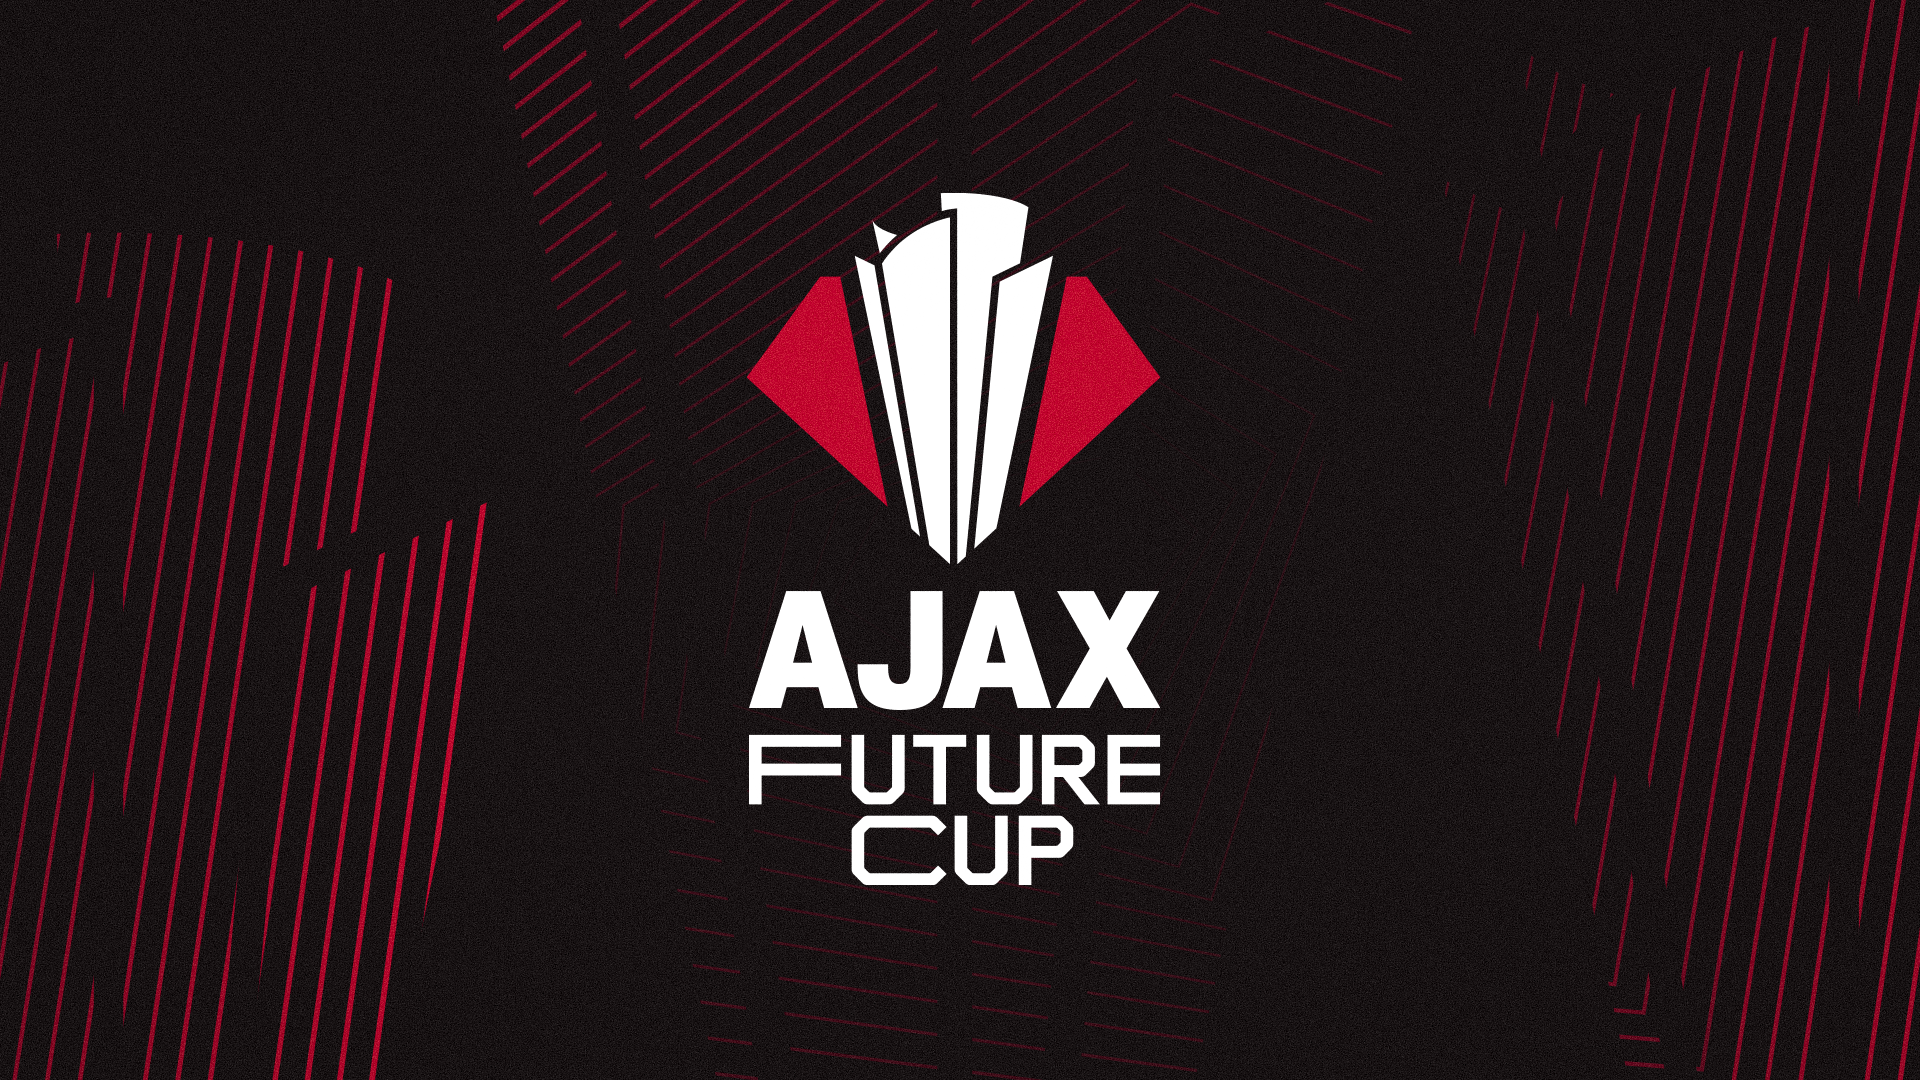 AJAX Future Cup 1920X1080